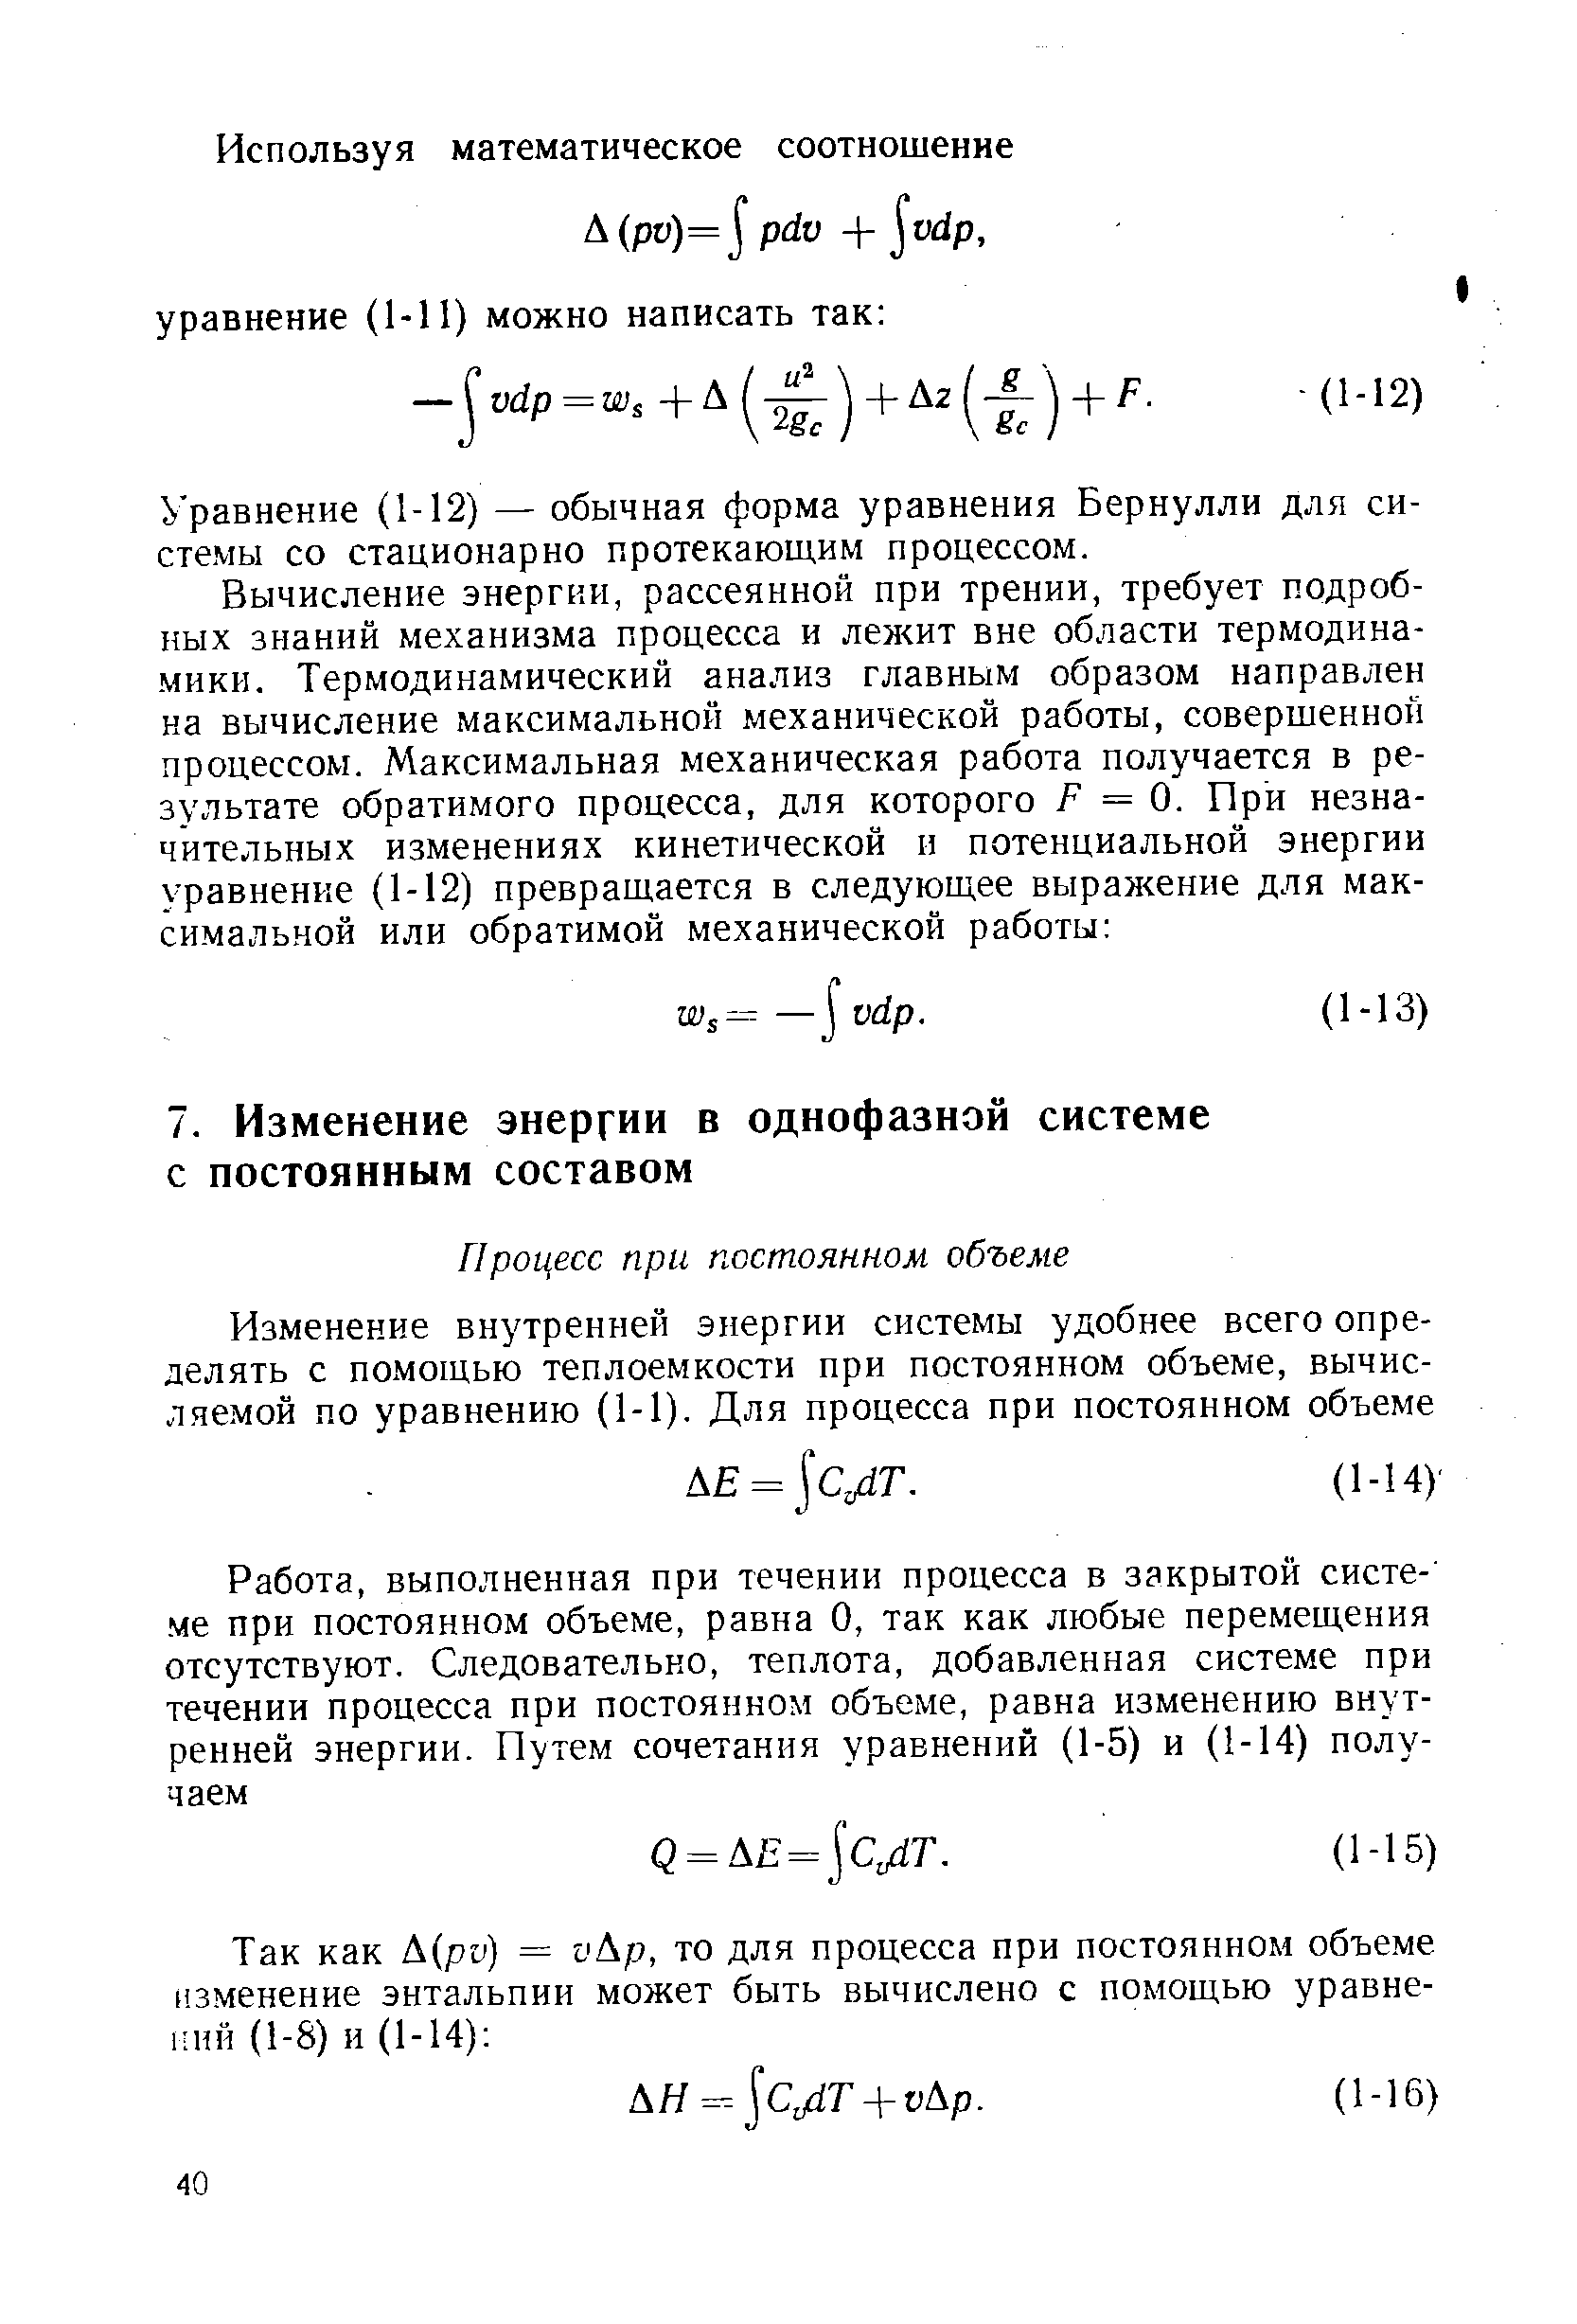 Уравнение (1-12) — обычная форма уравнения Бернулли для системы со стационарно протекающим процессом.
